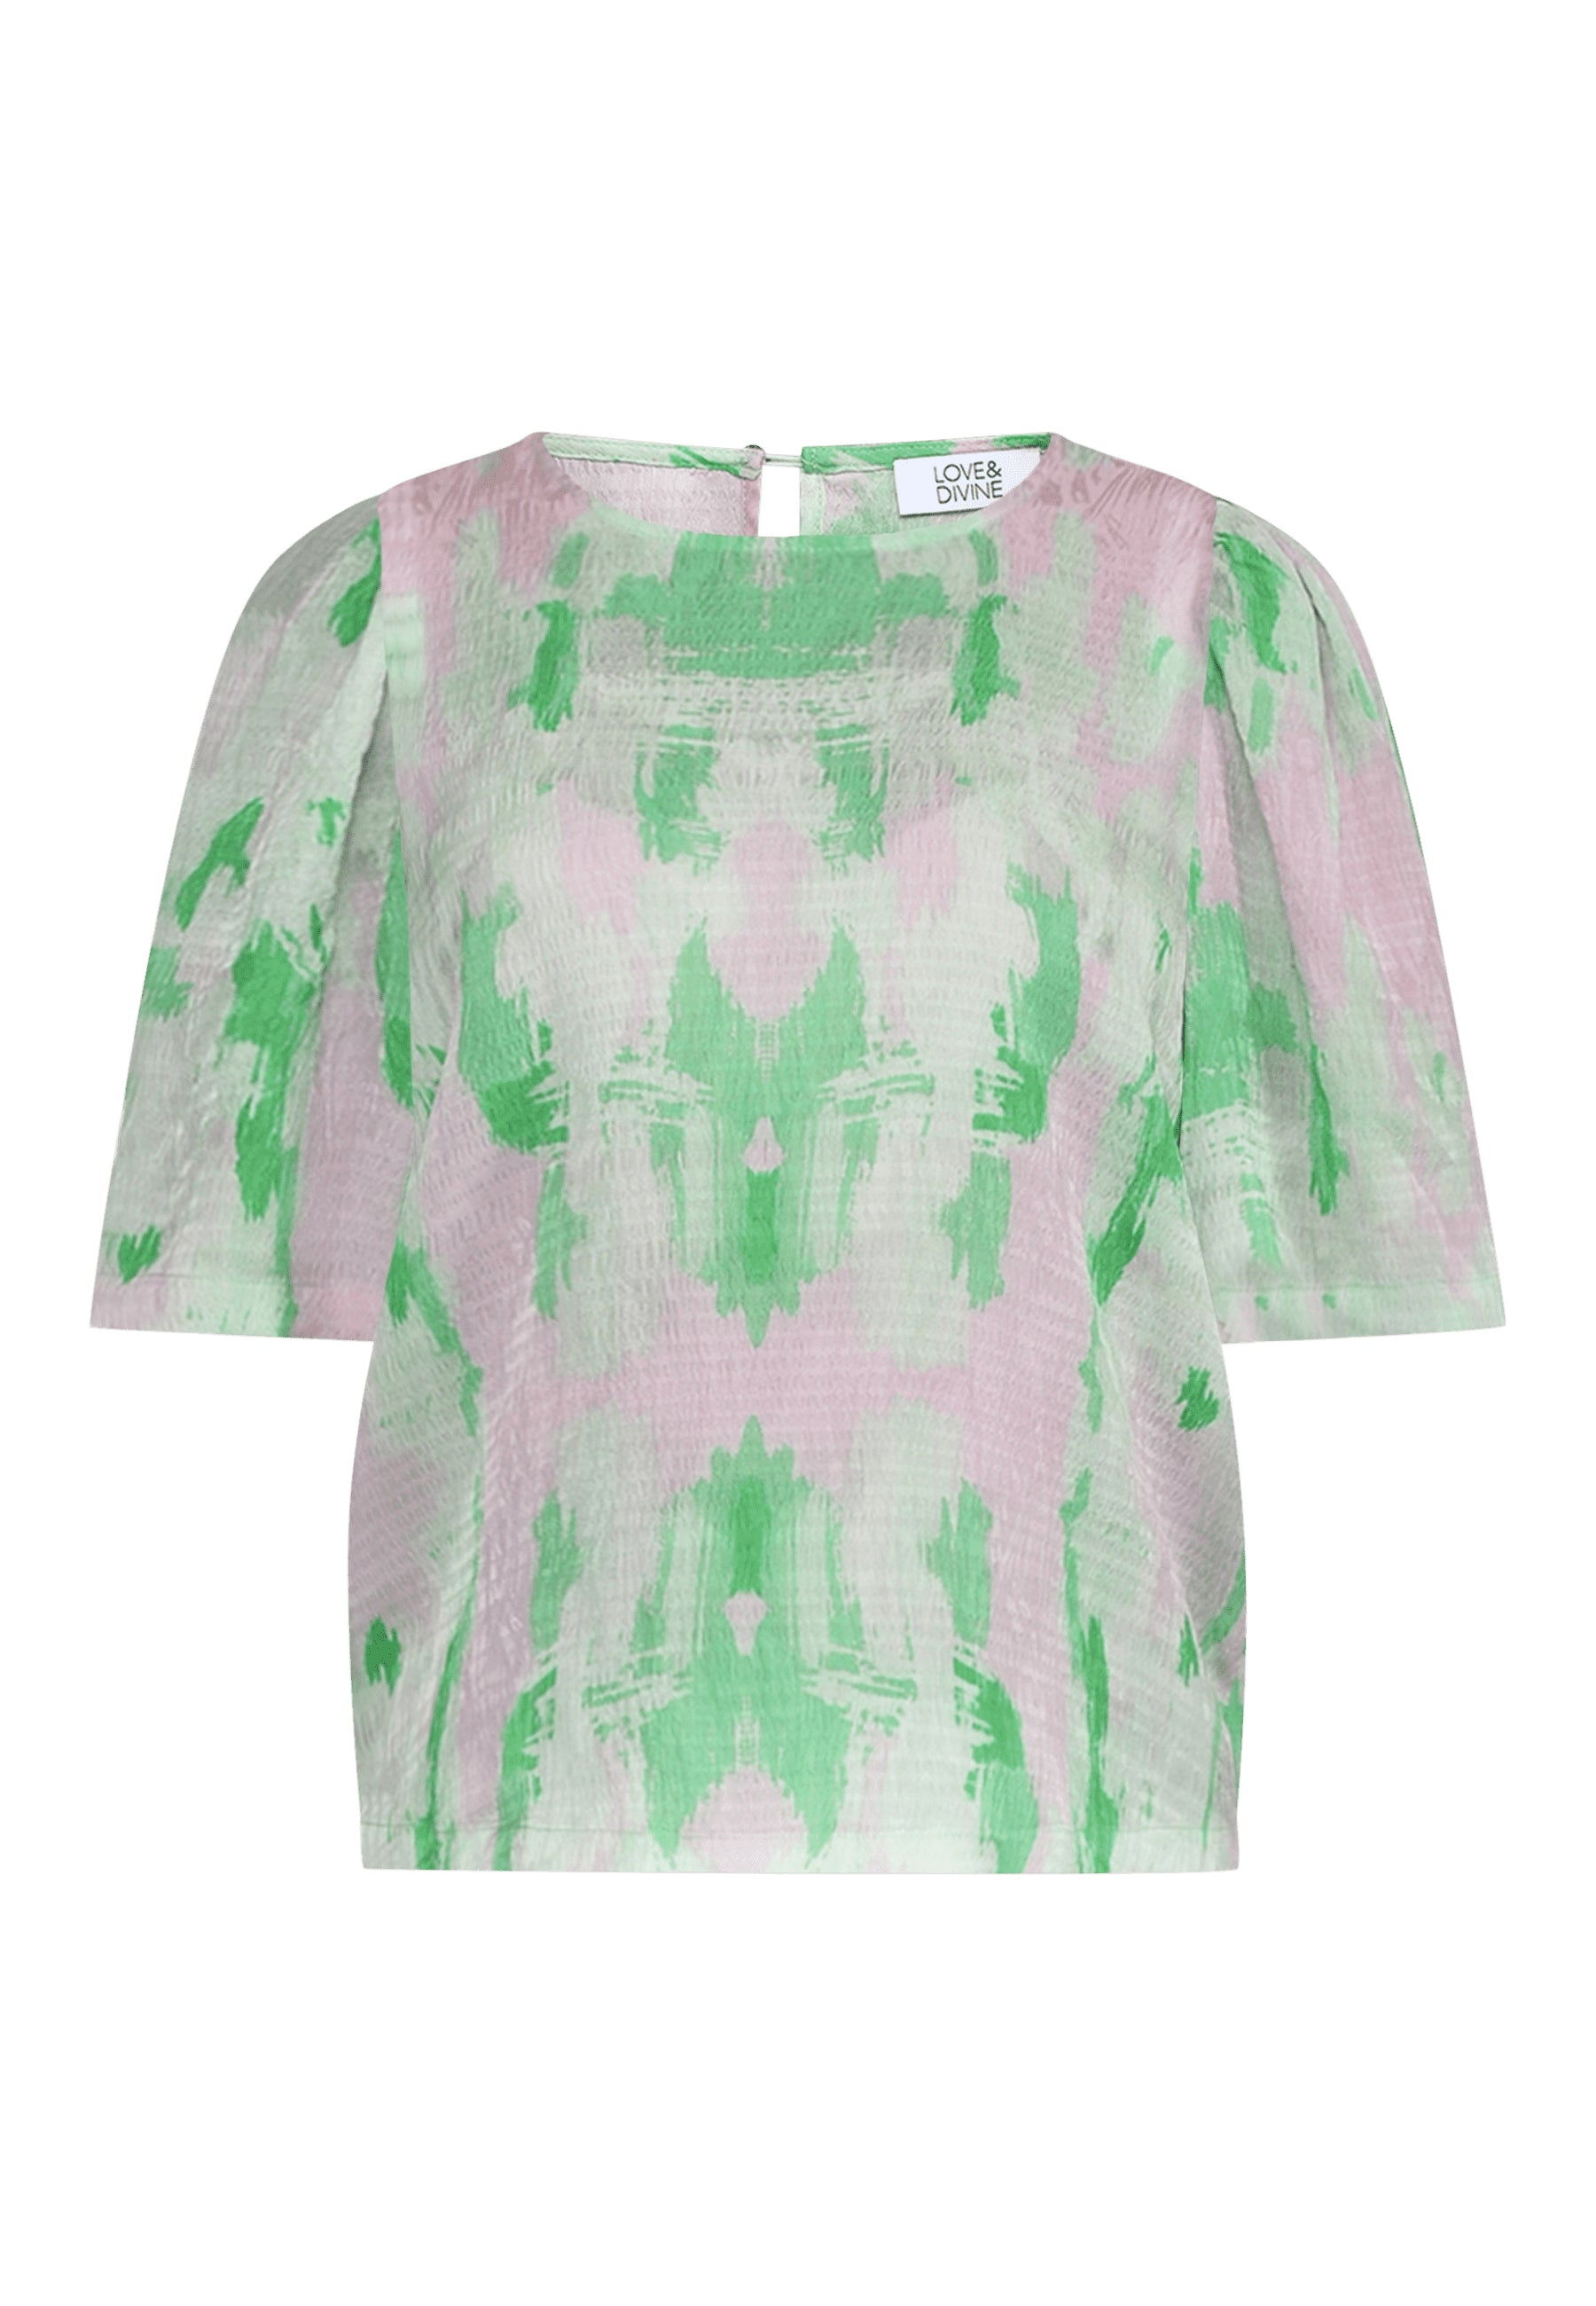 Bluse med grøn og pink print, kort ærmer, forfra